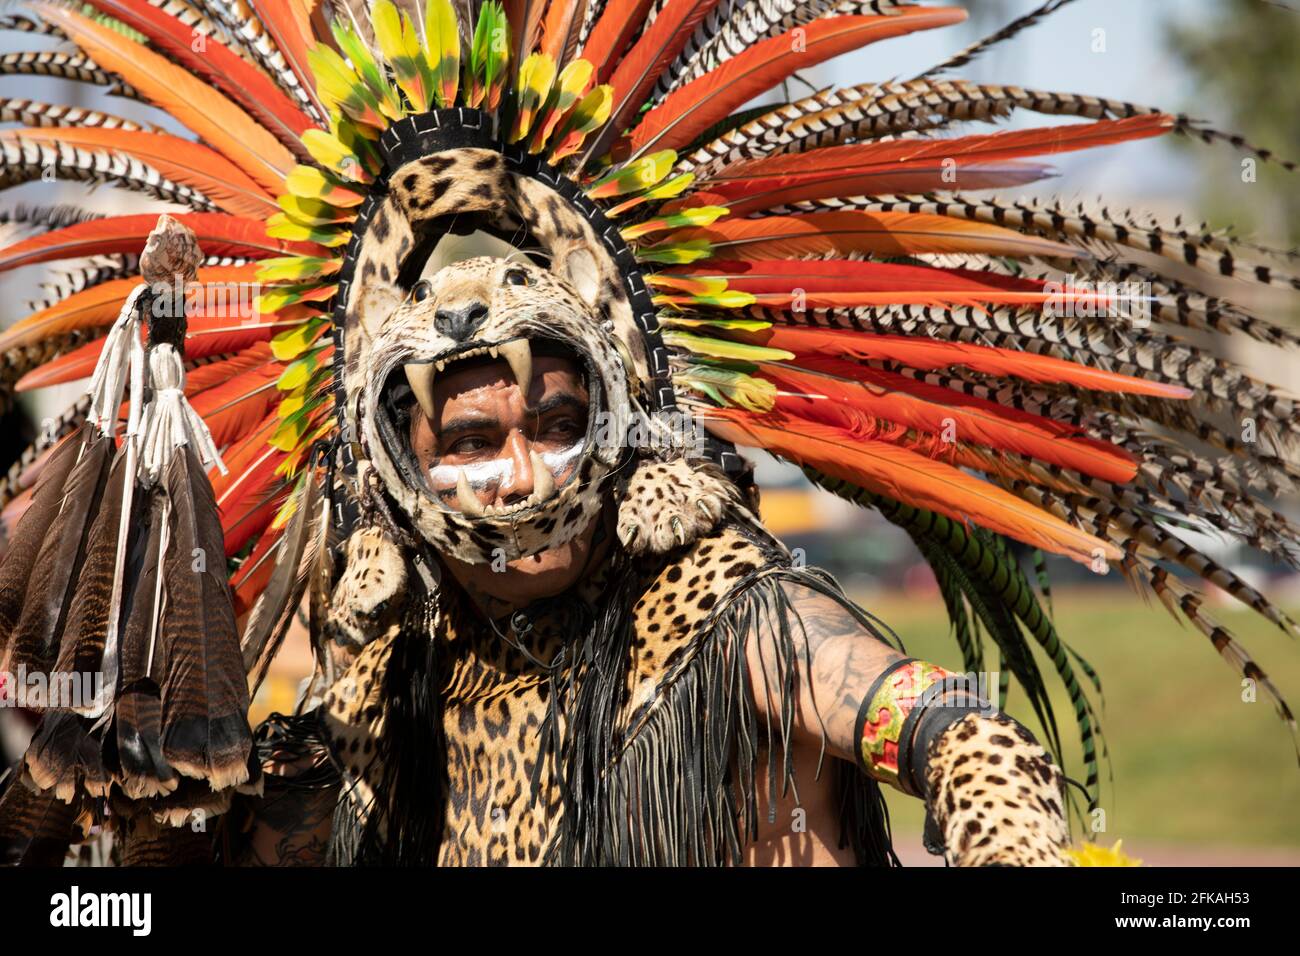 Baldwin Park, California, USA - April 18, 2021: Indigenous dancers perform in full regalia. Stock Photo